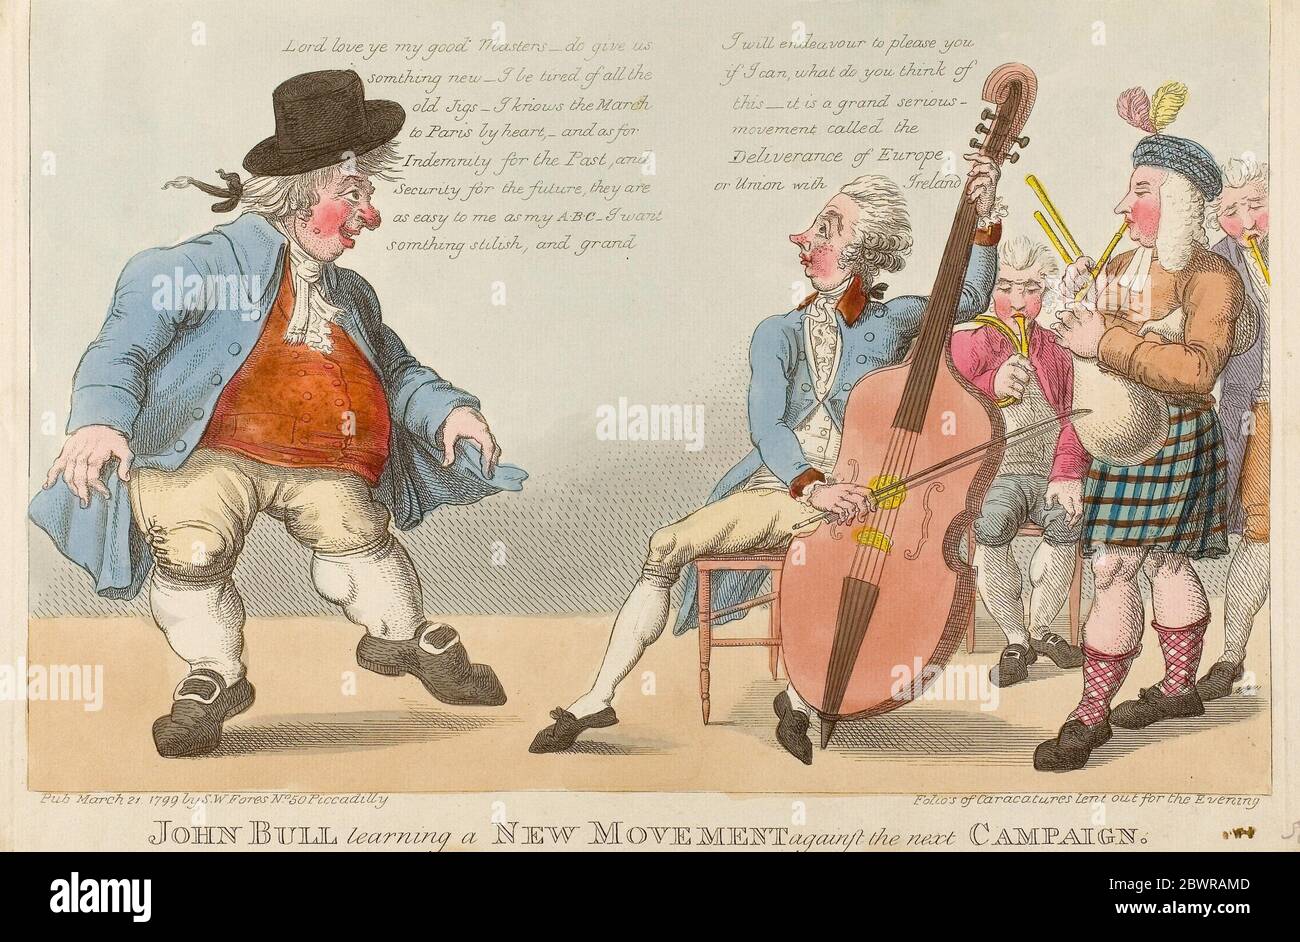 Autore: S. W. Fores. John Bull Learning a New Movement - pubblicato il 21 marzo 1799 - artista sconosciuto (inglese, fine XVIII-inizio XIX secolo) Foto Stock